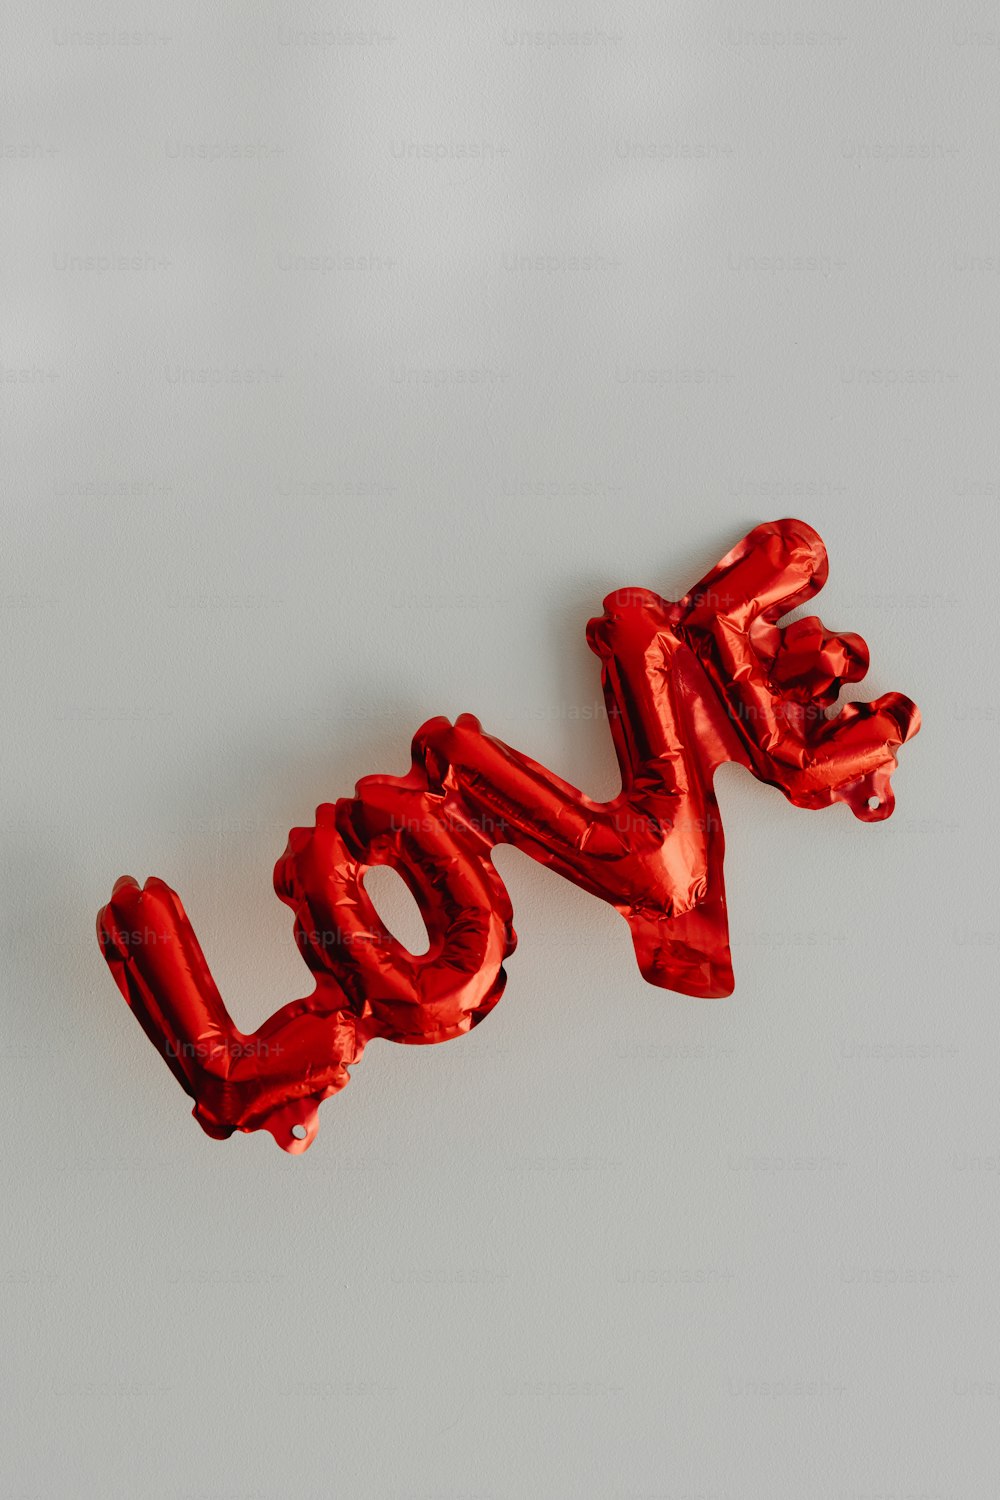 Das Wort Liebe aus roten Folienballons